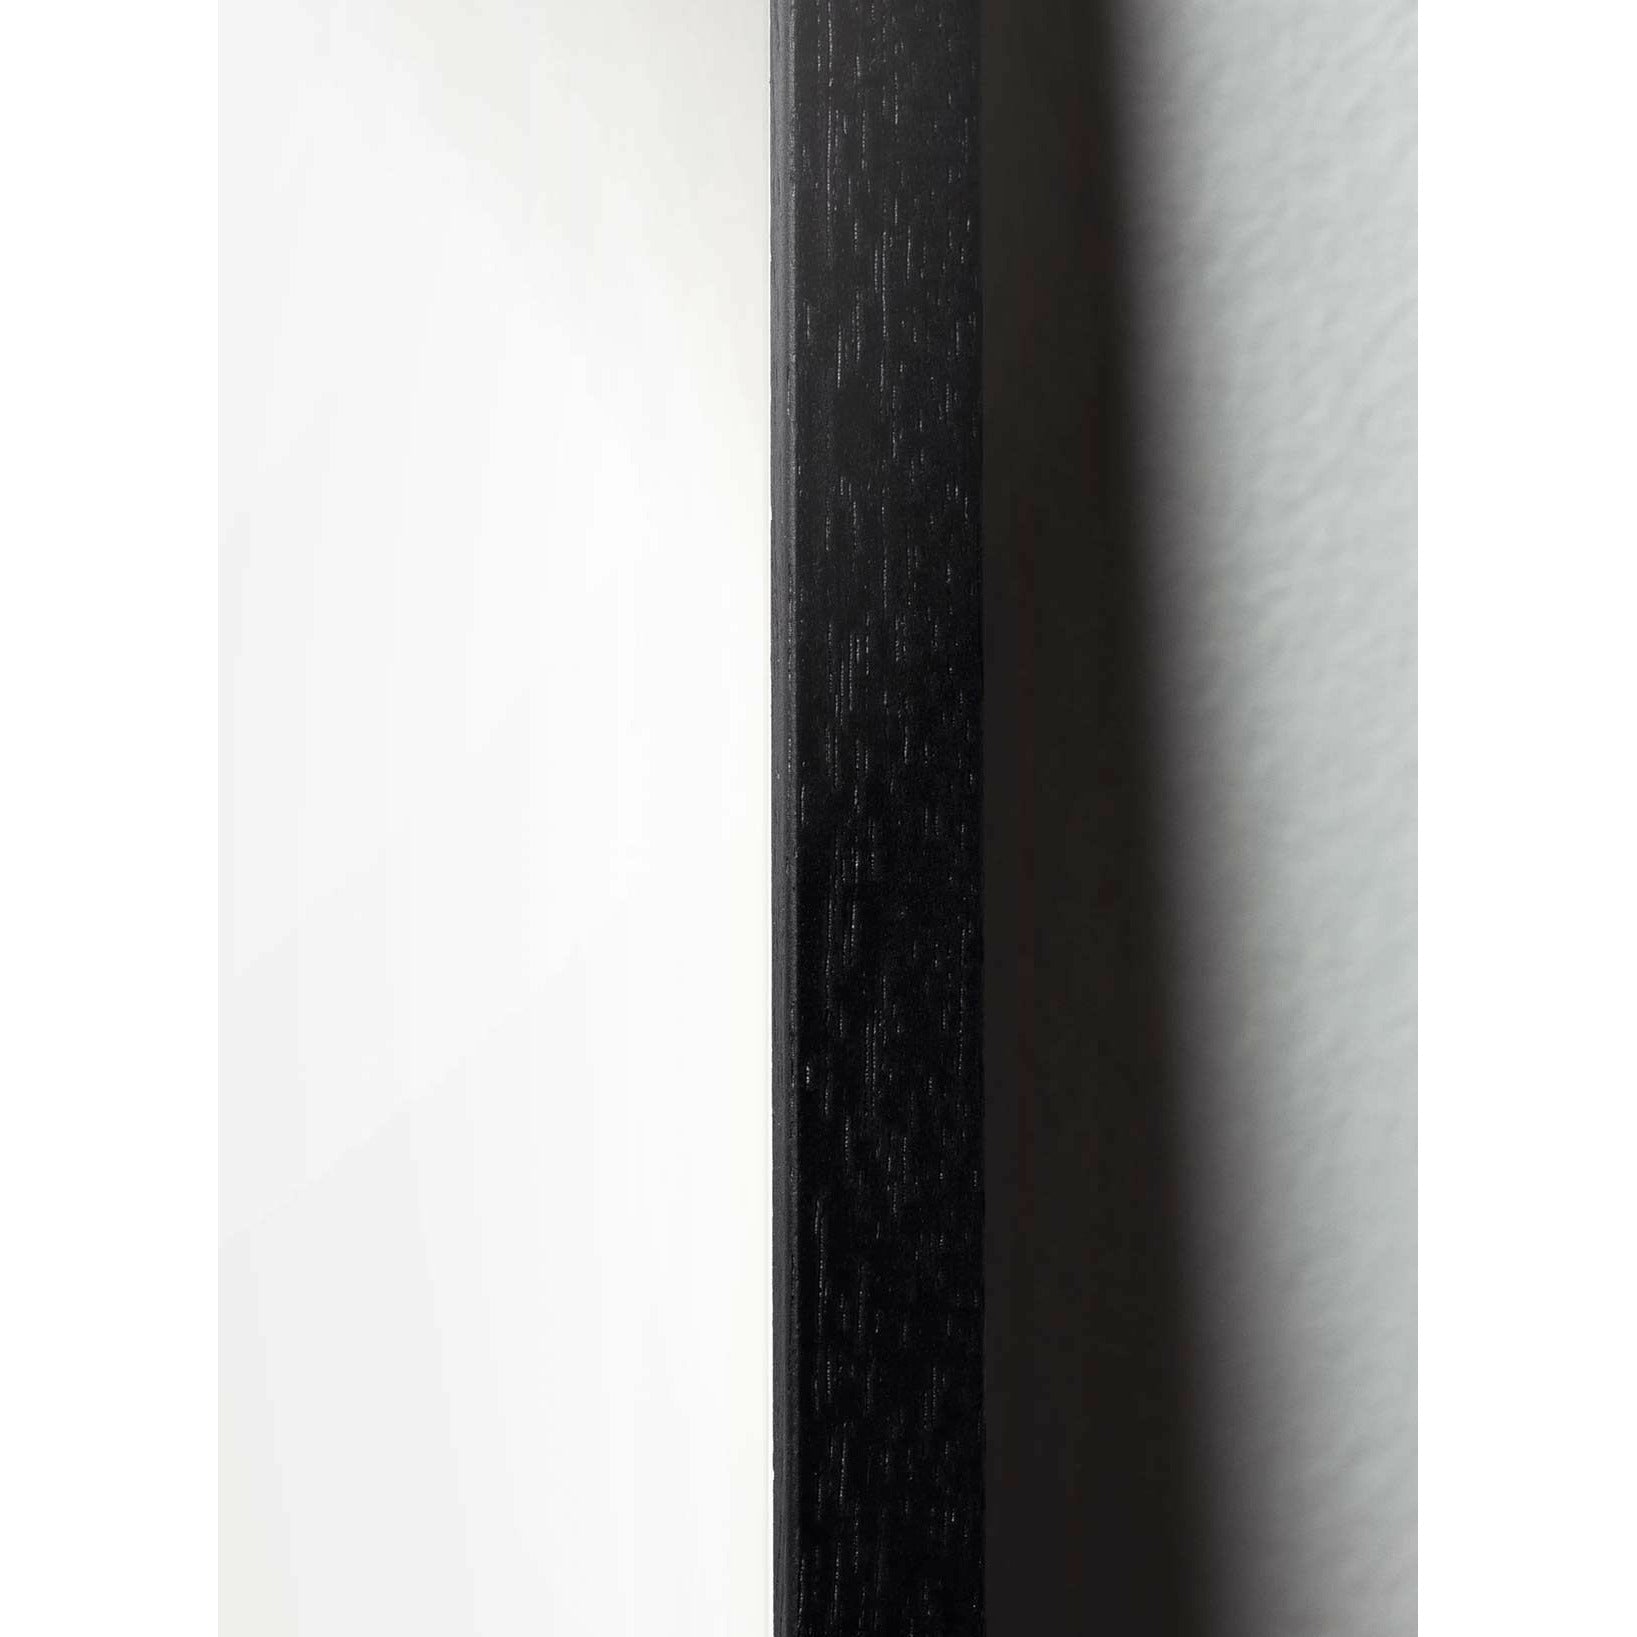 Poster de creación eierparade, marco hecho de madera lacada negra, 30x40 cm